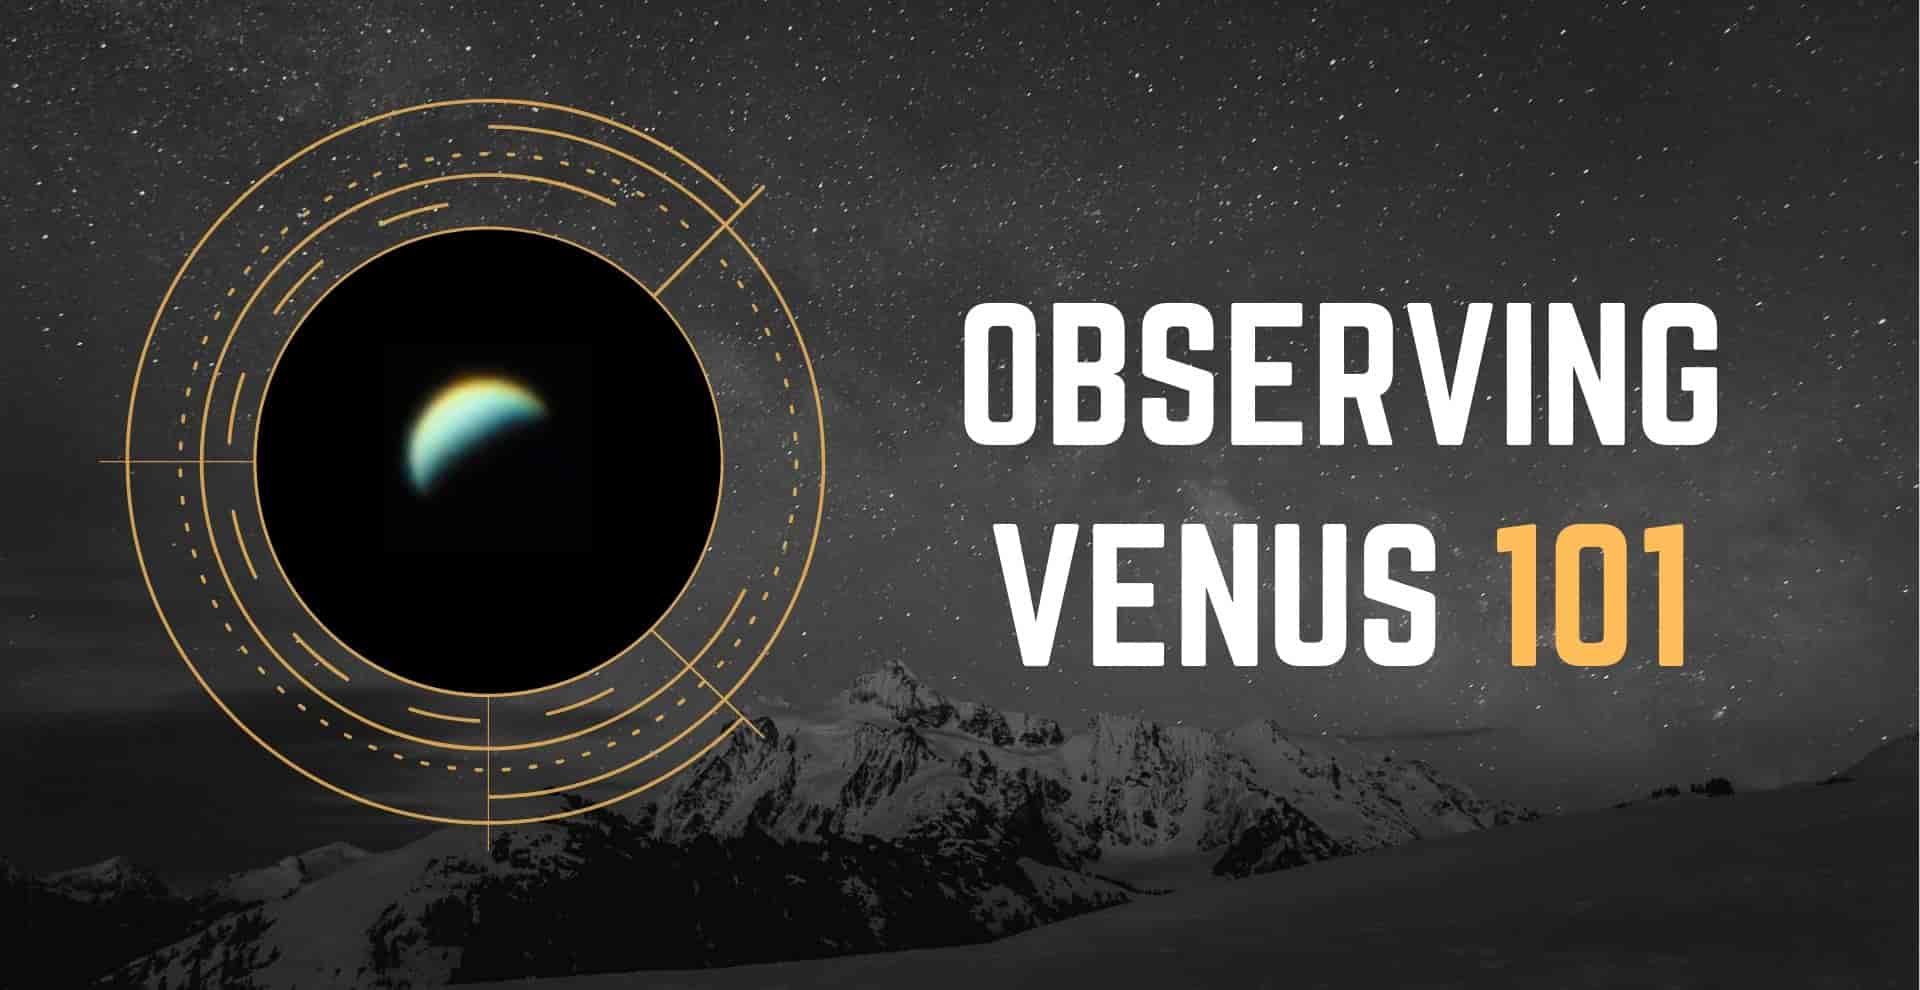 Venus with telescope fb